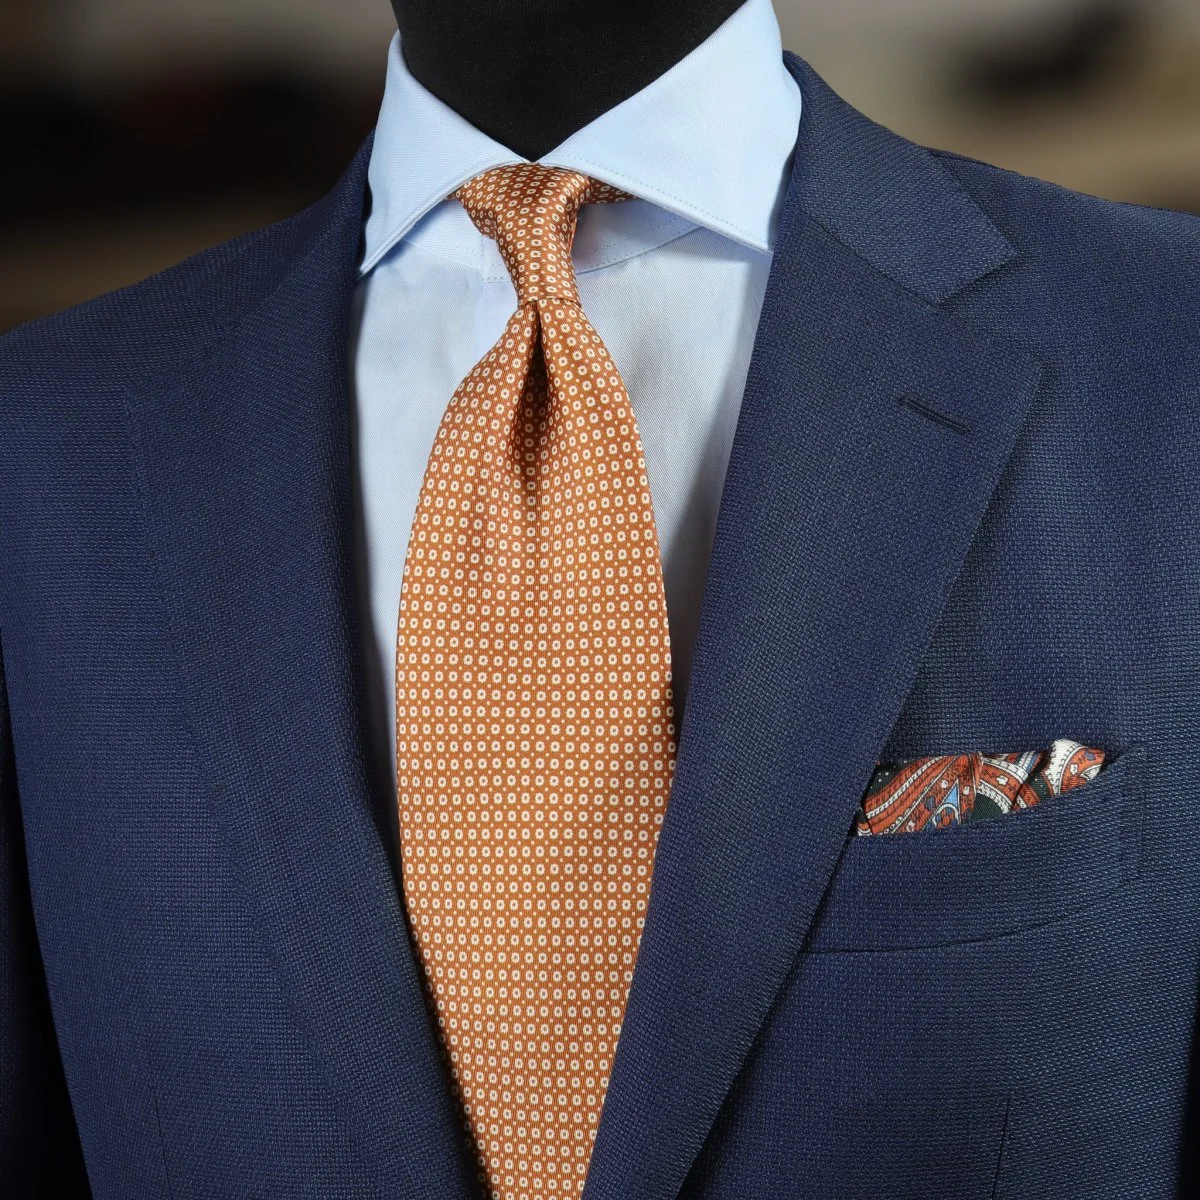 Blue suit, light blue shirt and orange tie combination